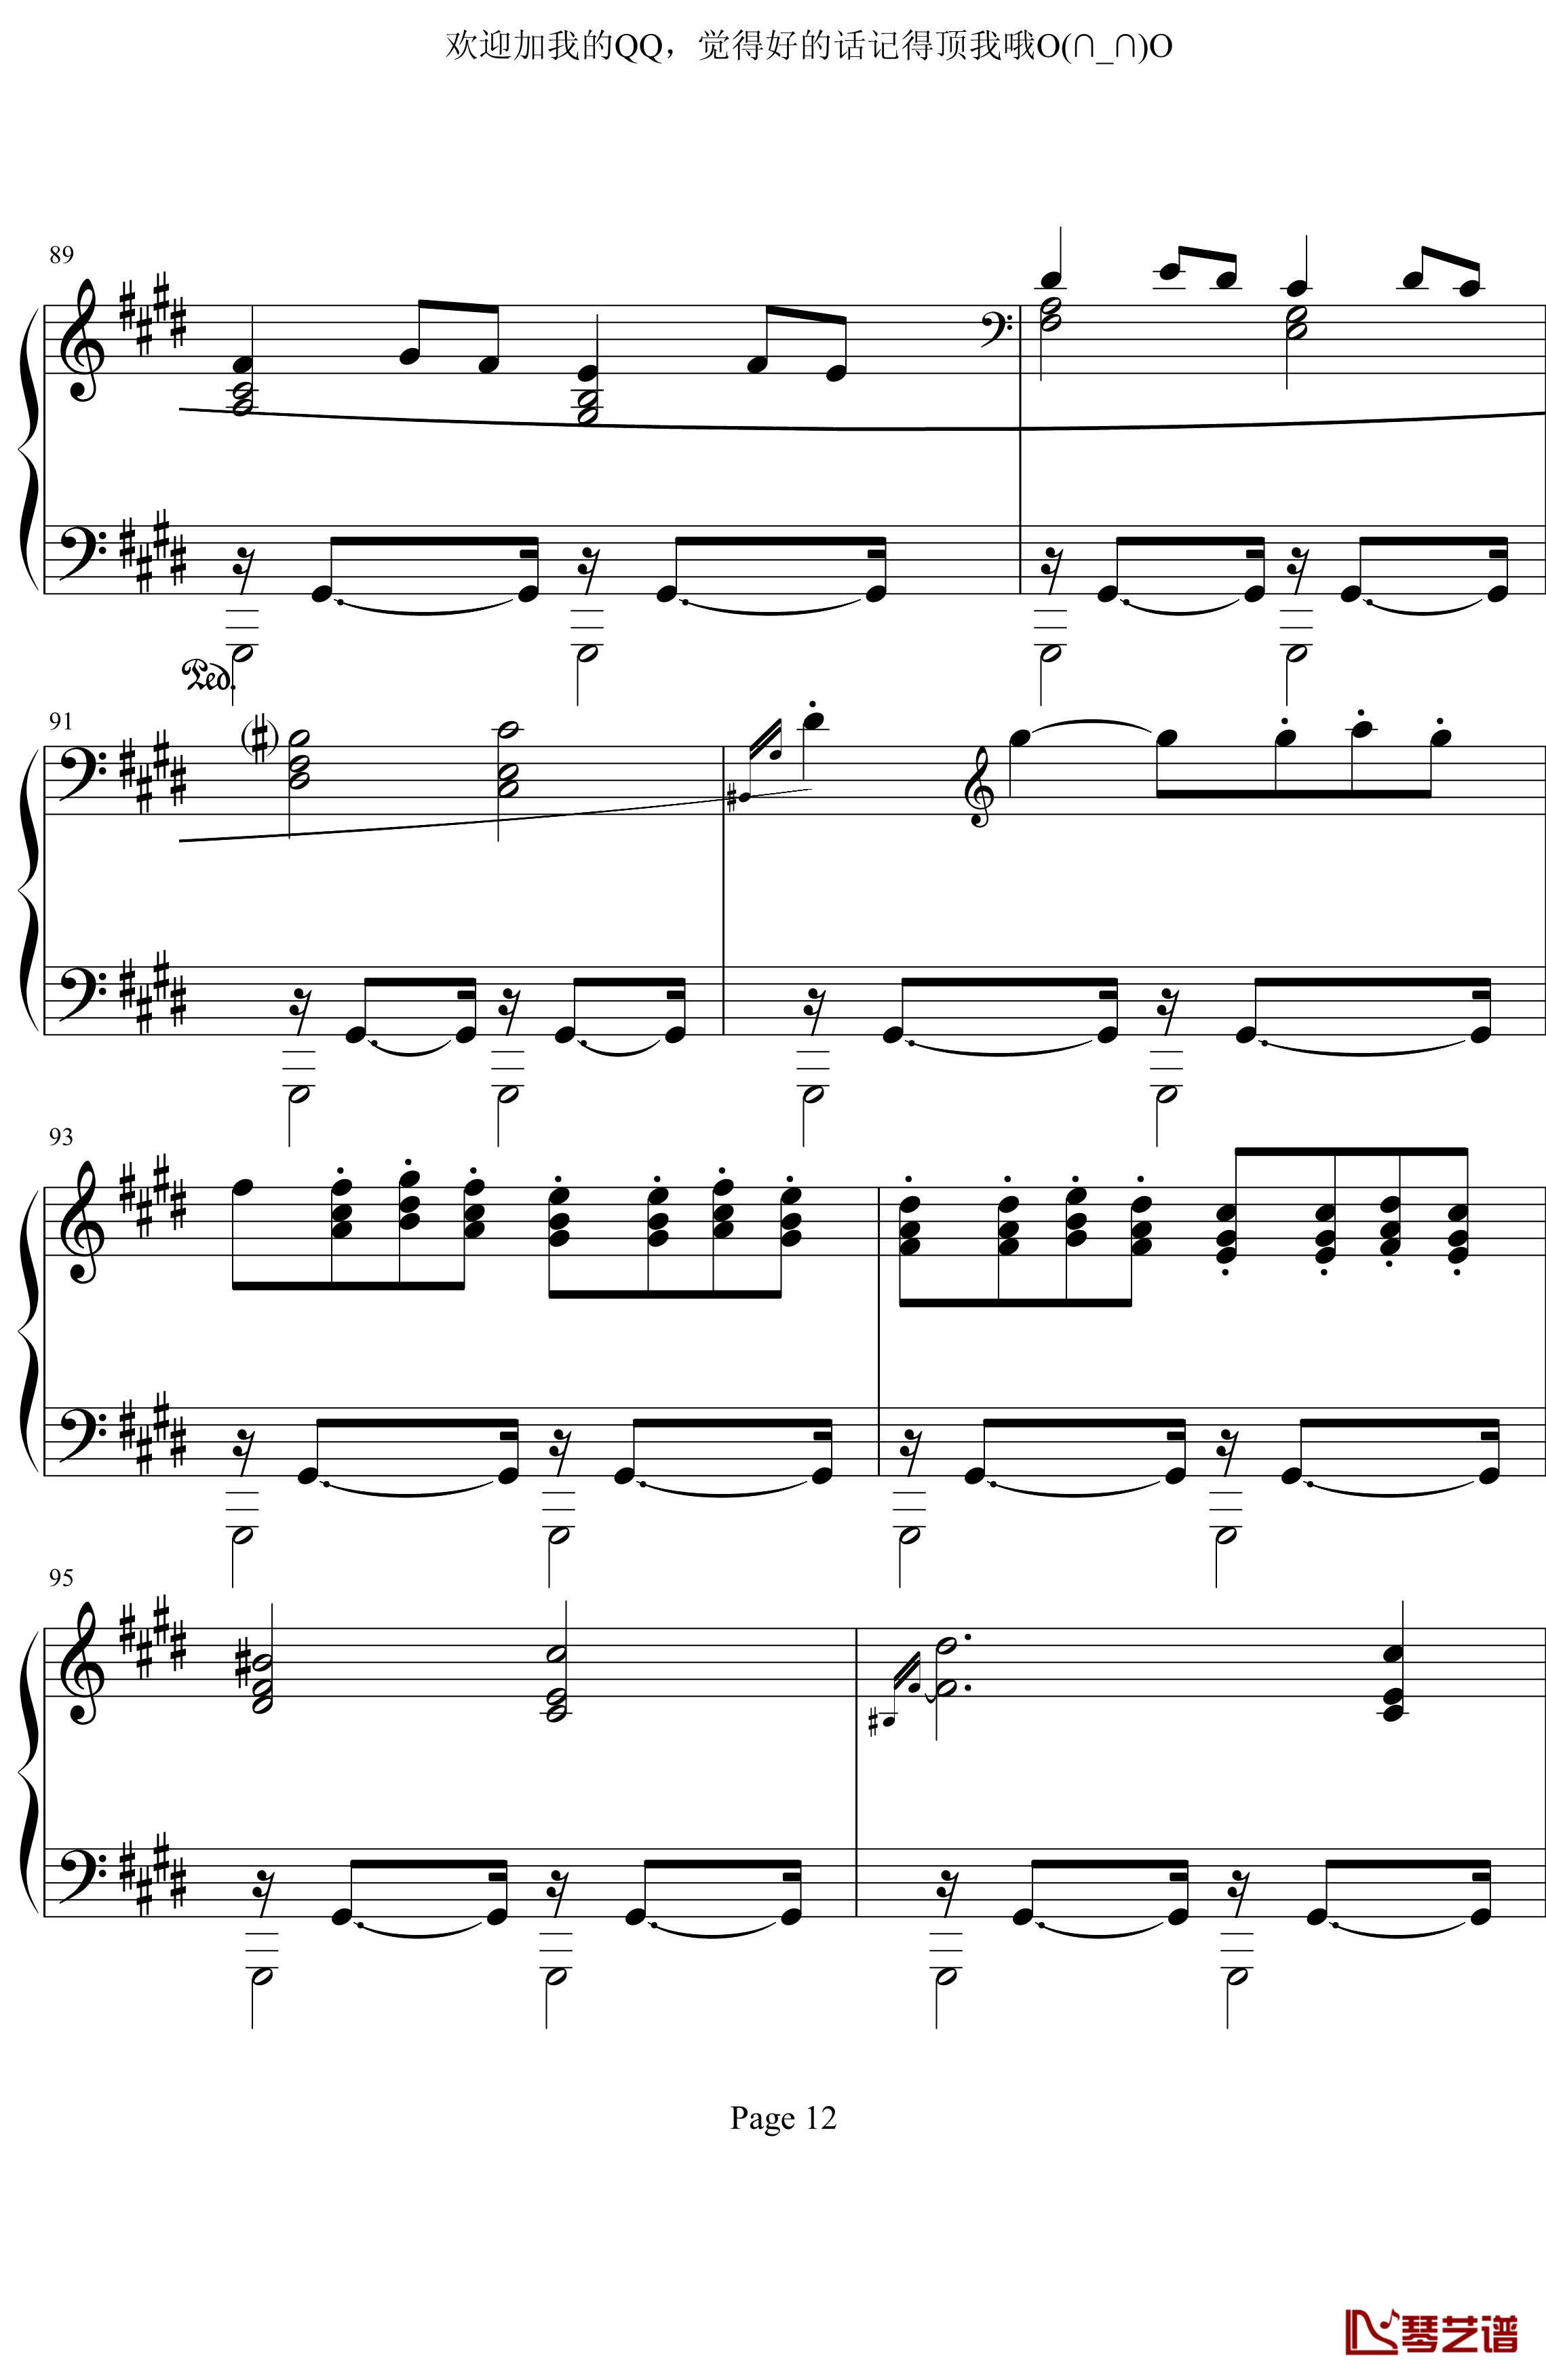 月光奏鸣曲第三乐章钢琴谱-贝多芬-beethoven12